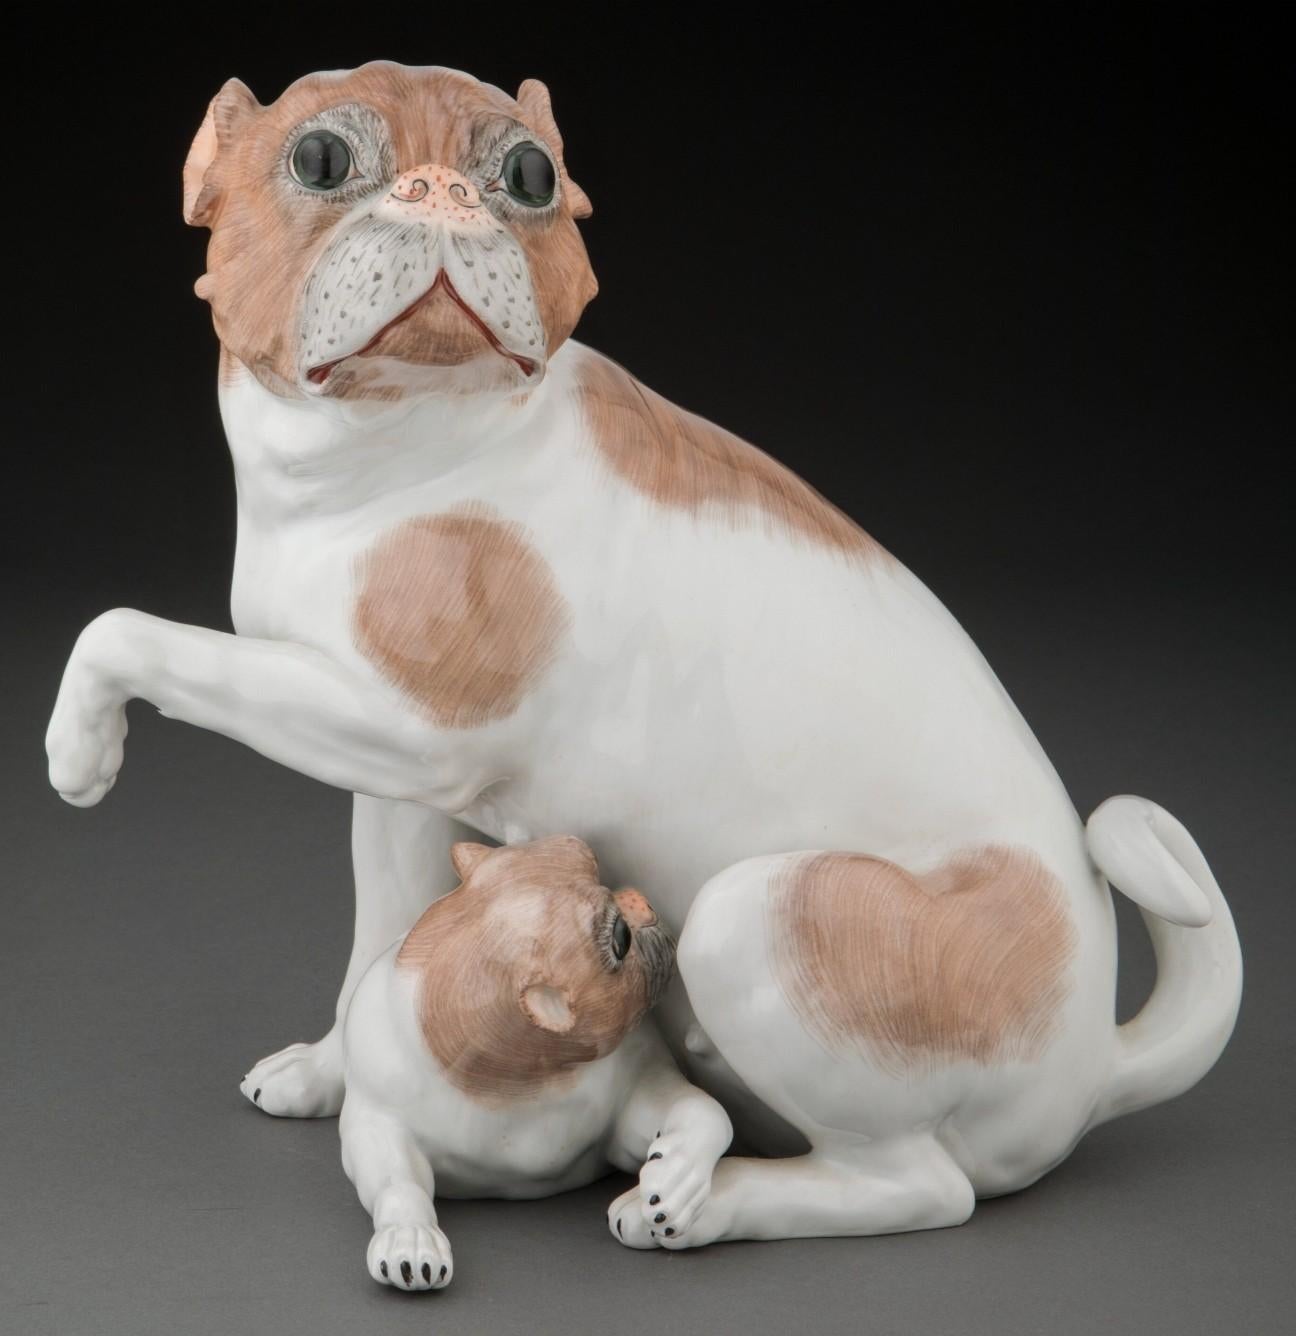 Ravissant groupe de figurines de chiens carlins en porcelaine de Dresde, conçu par Carl Thieme de Potschappel, Saxe, Allemagne. Début du 20e siècle, sculpture en porcelaine exceptionnellement exécutée représentant une mère carlin et son petit en